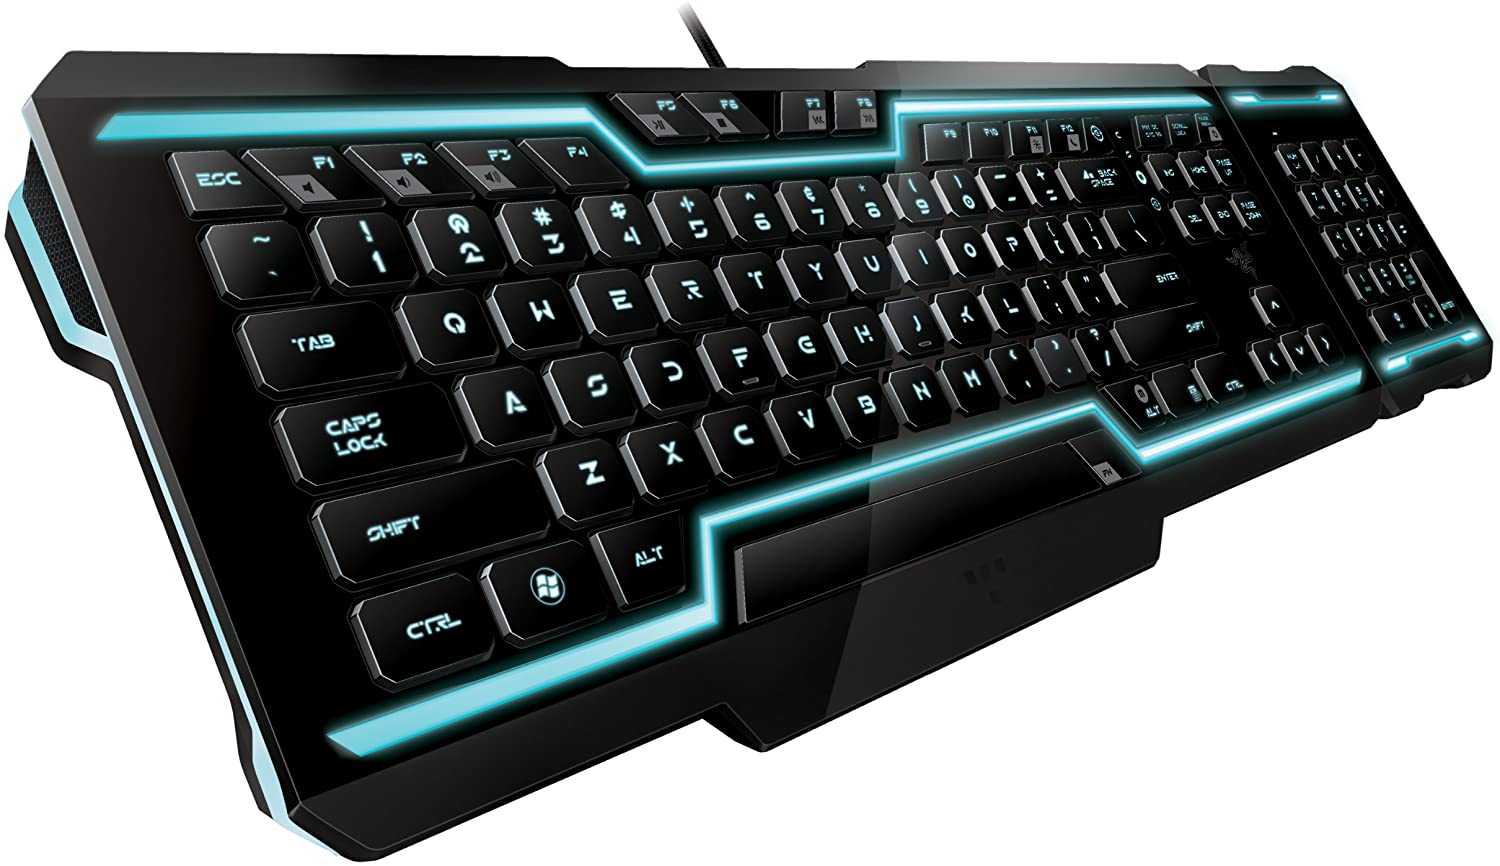 Клавиатура мышь комплект Razer TRON Gaming Keyboard Black USB - подробные характеристики обзоры видео фото Цены в интернет-магазинах где можно купить клавиатуру мышь комплект Razer TRON Gaming Keyboard Black USB